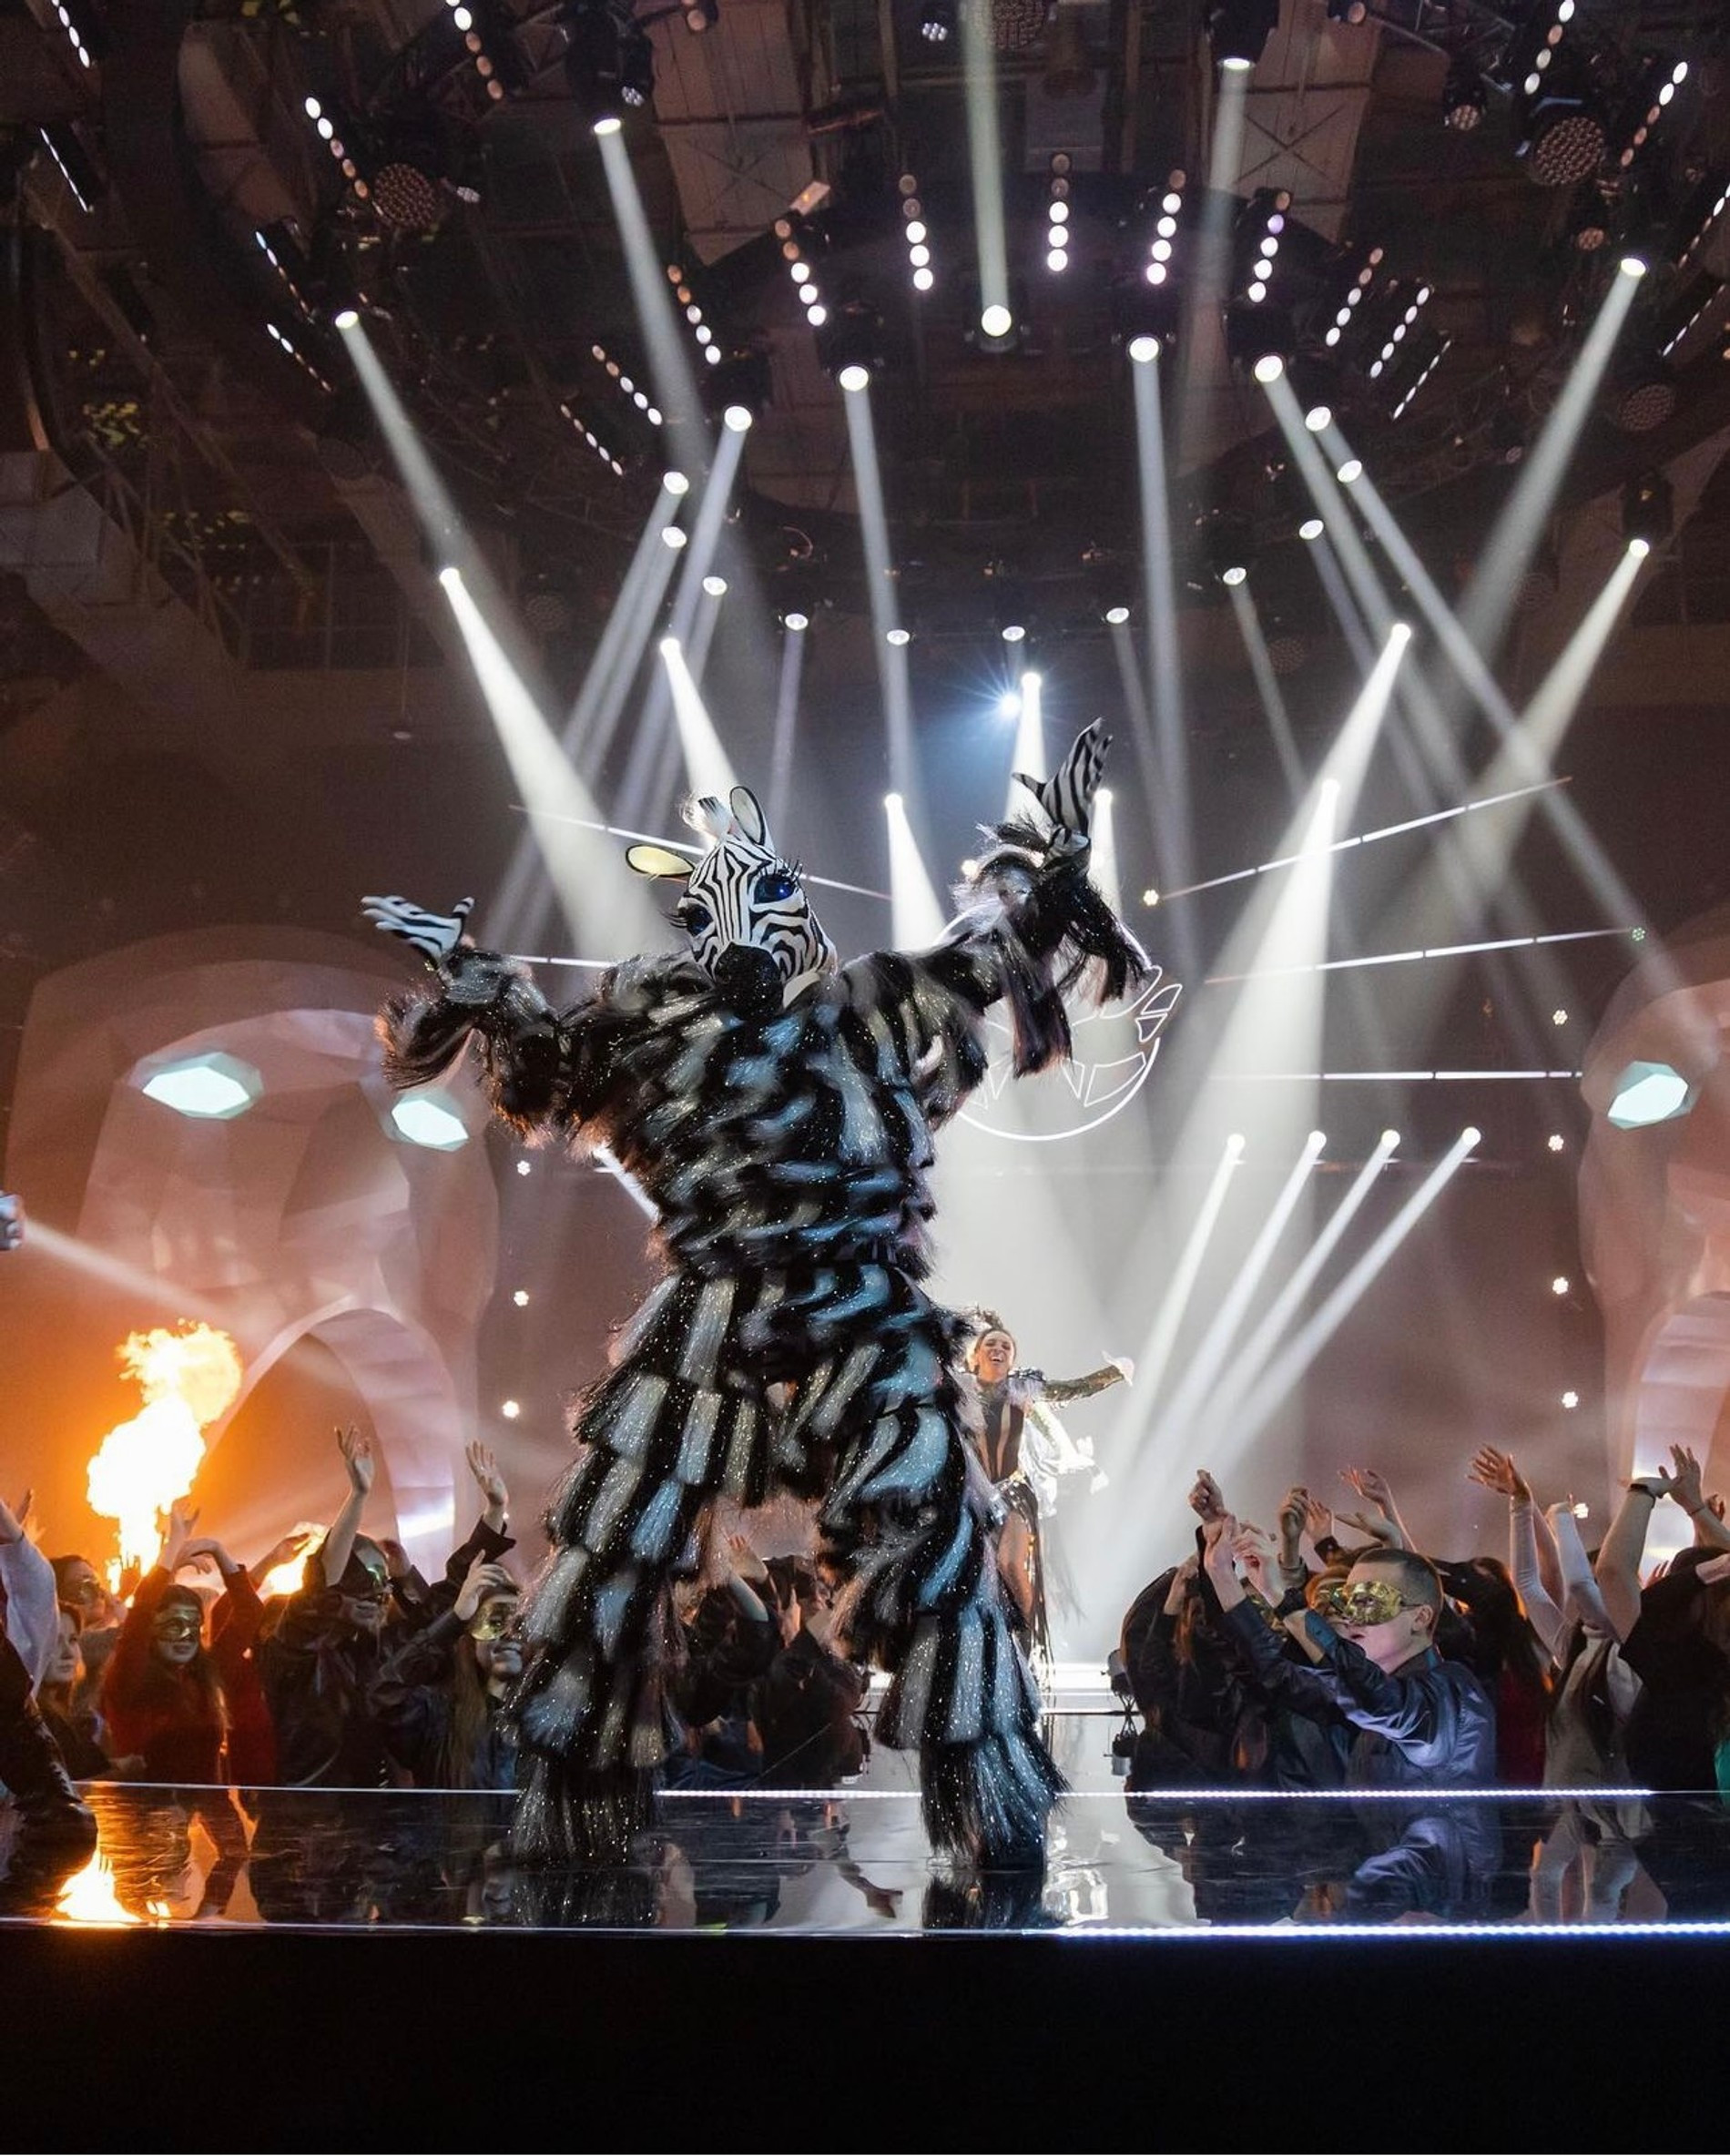 Катя Адушкина в костюме Зебры на шоу «Маска. Танцы»
Фото: Инстаграм (запрещен в РФ)